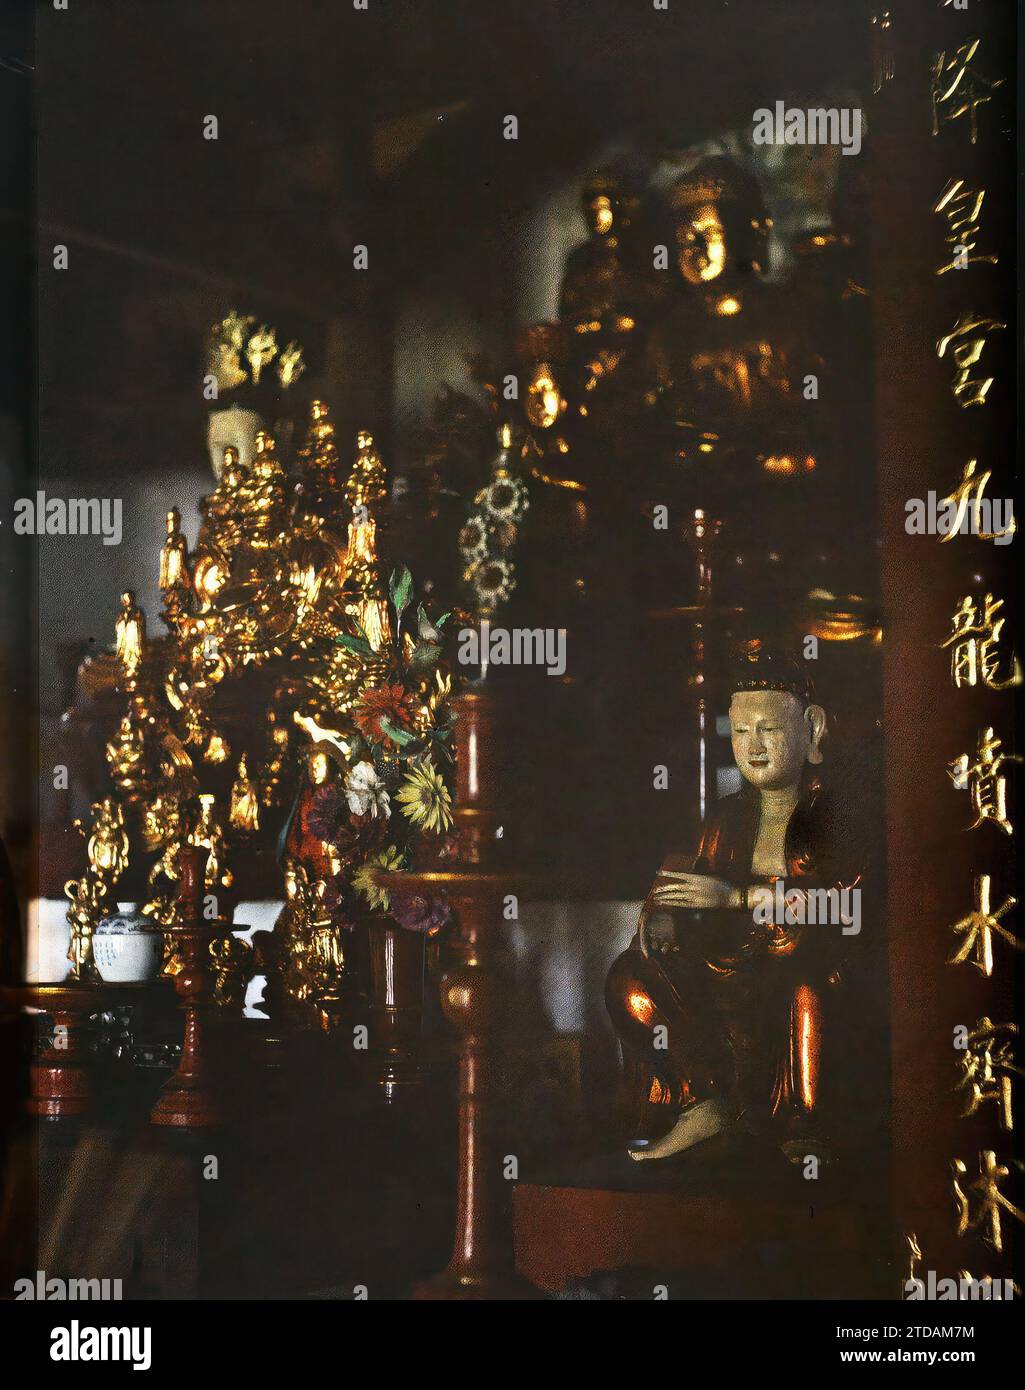 Hà-noi, Tonchino, Indocina l'altare del Buddha di Cakyamuni (Siddhartha Gautama) all'interno di un tempio buddista ('Lien-thuy'), religione, Habitat, architettura, iscrizione, informazioni, Statua, Buddismo, Buddha, Tempio, pagoda, candeliere, vista interna, altare, iscrizione religiosa o votiva, ceramica, architettura religiosa, Indocina, Tonchino, pagine buddiste, Pagoda di Lien Thuy: altare di Thich-la (Cakiamouni), Hà-nôi, Hainoi Vietnam, 01/06/1916 - 31/07/1916, occupato, Léon, fotografo Léon Busy en Indochine, Autochrome, foto, vetro, Autochrome, foto, positivo, verticale Foto Stock